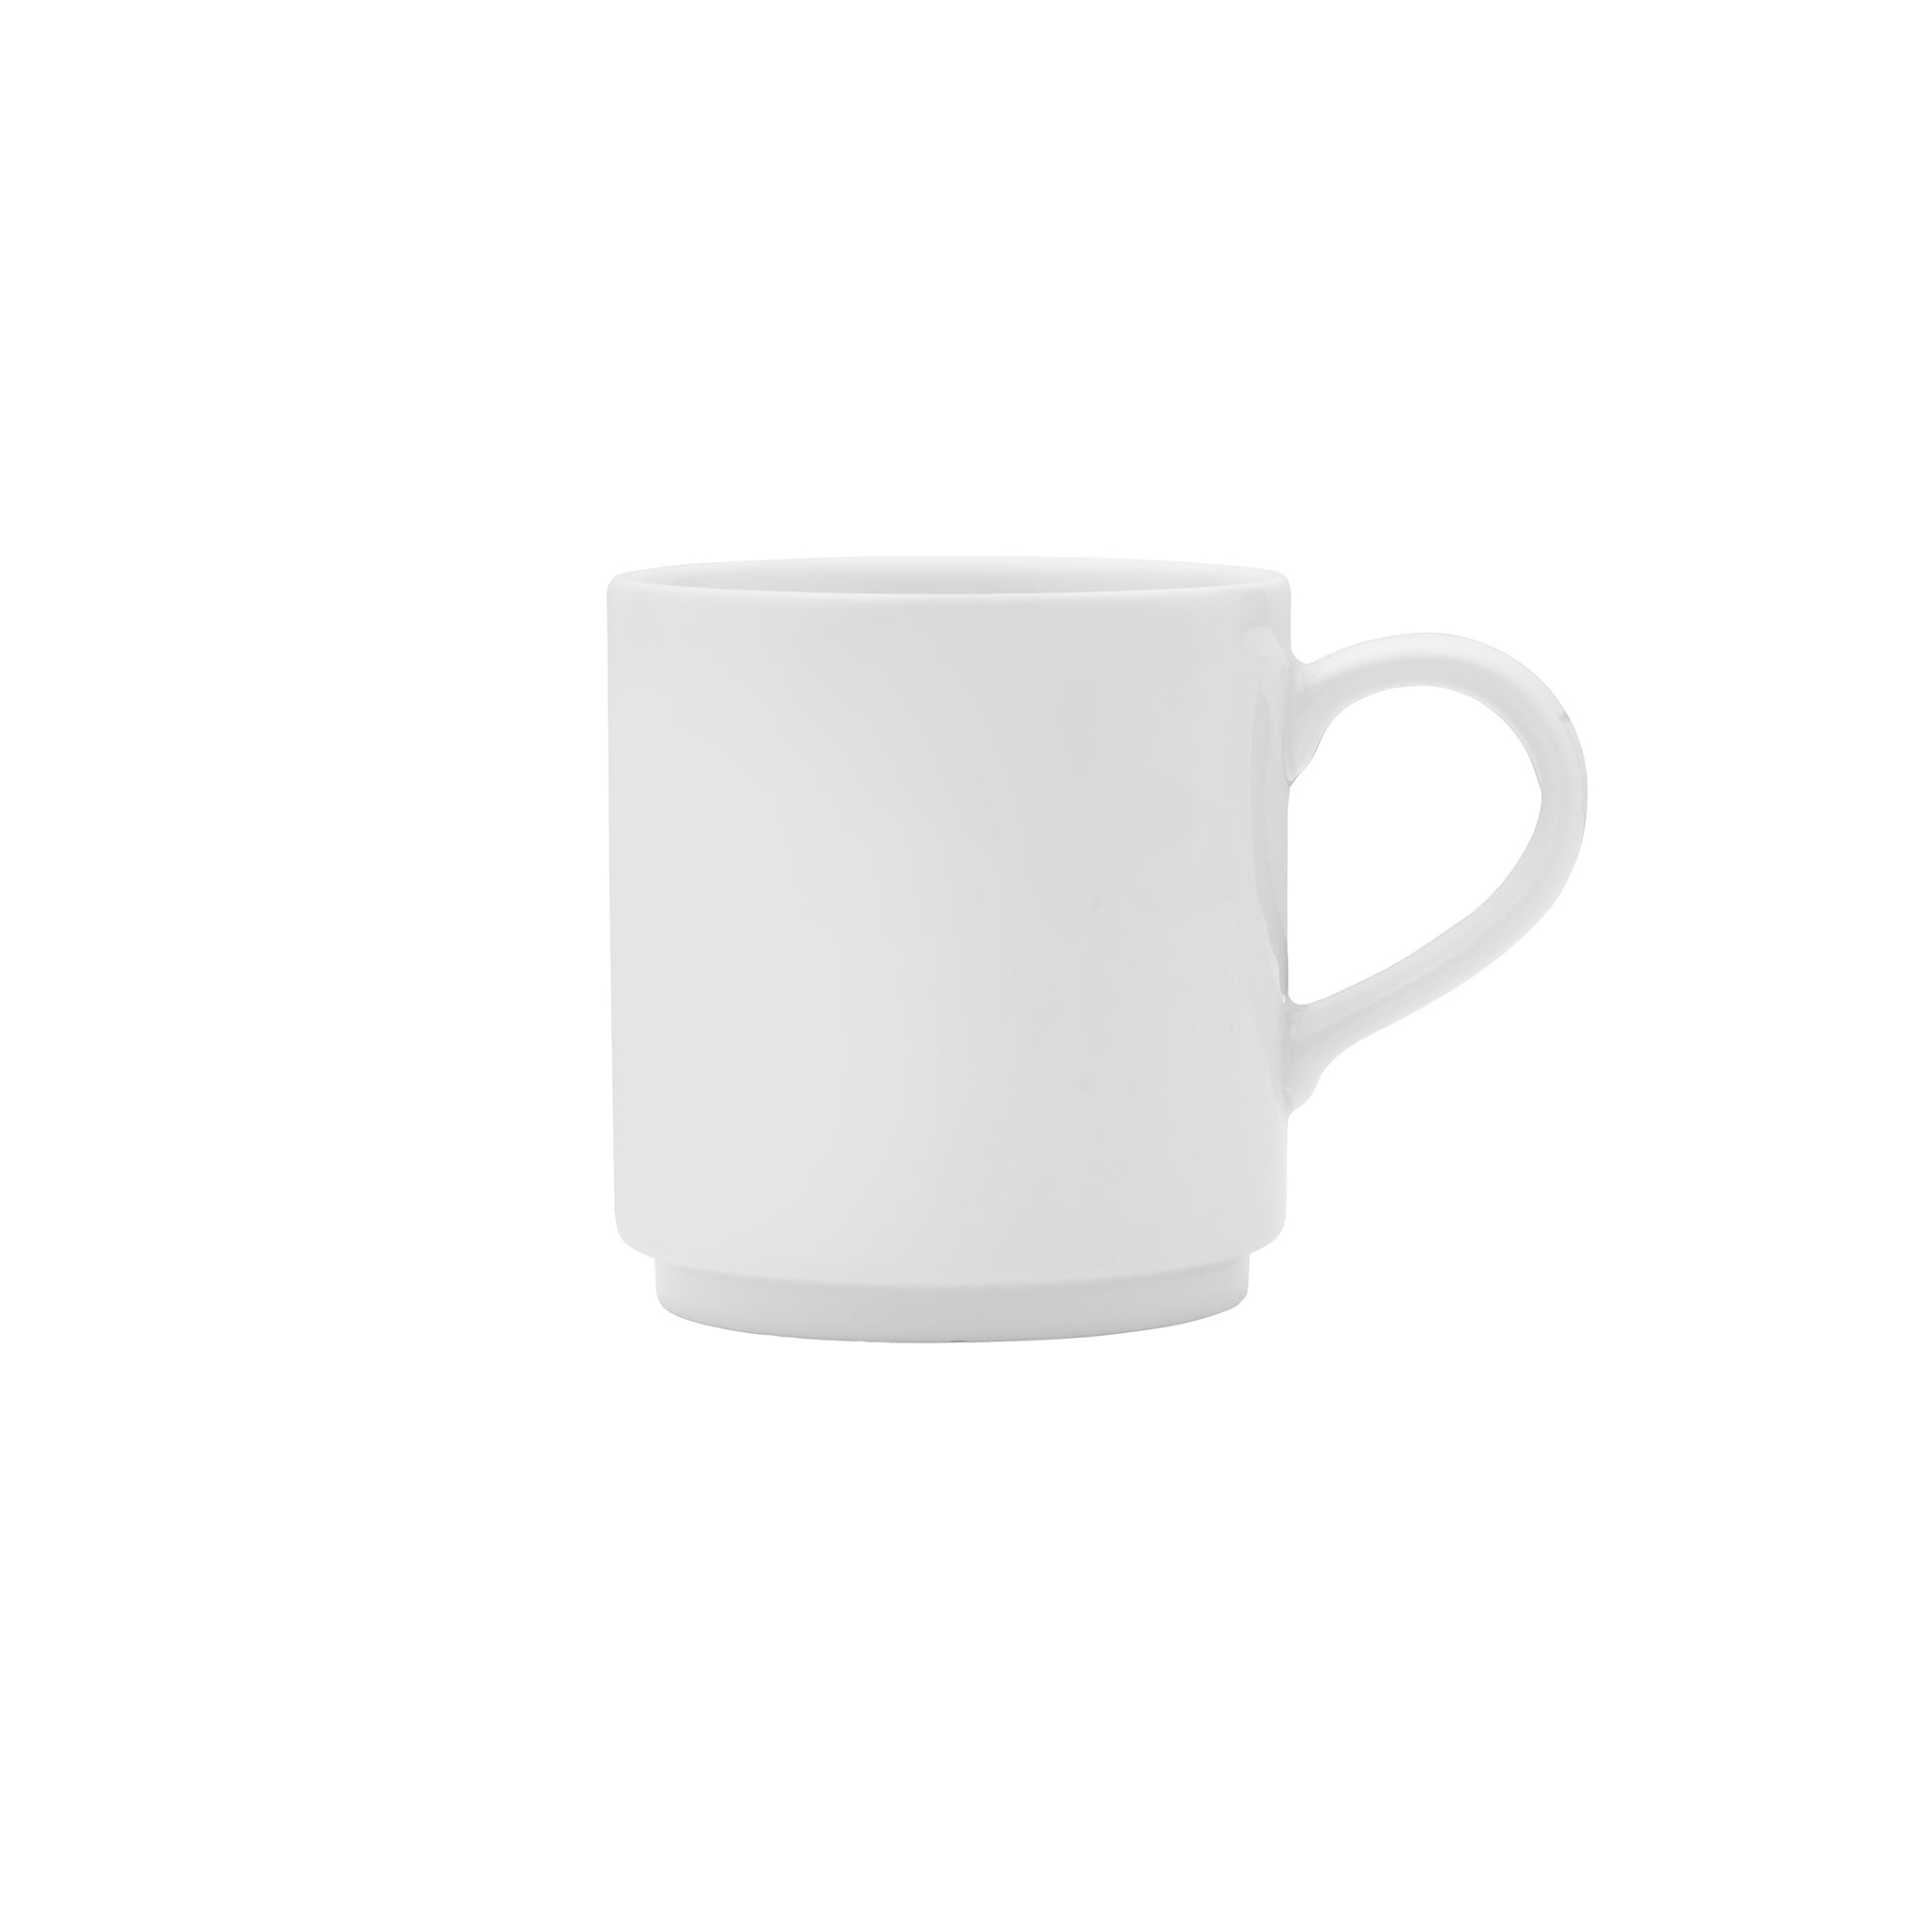 Galleria Porcelain Mug 5" / 10oz White